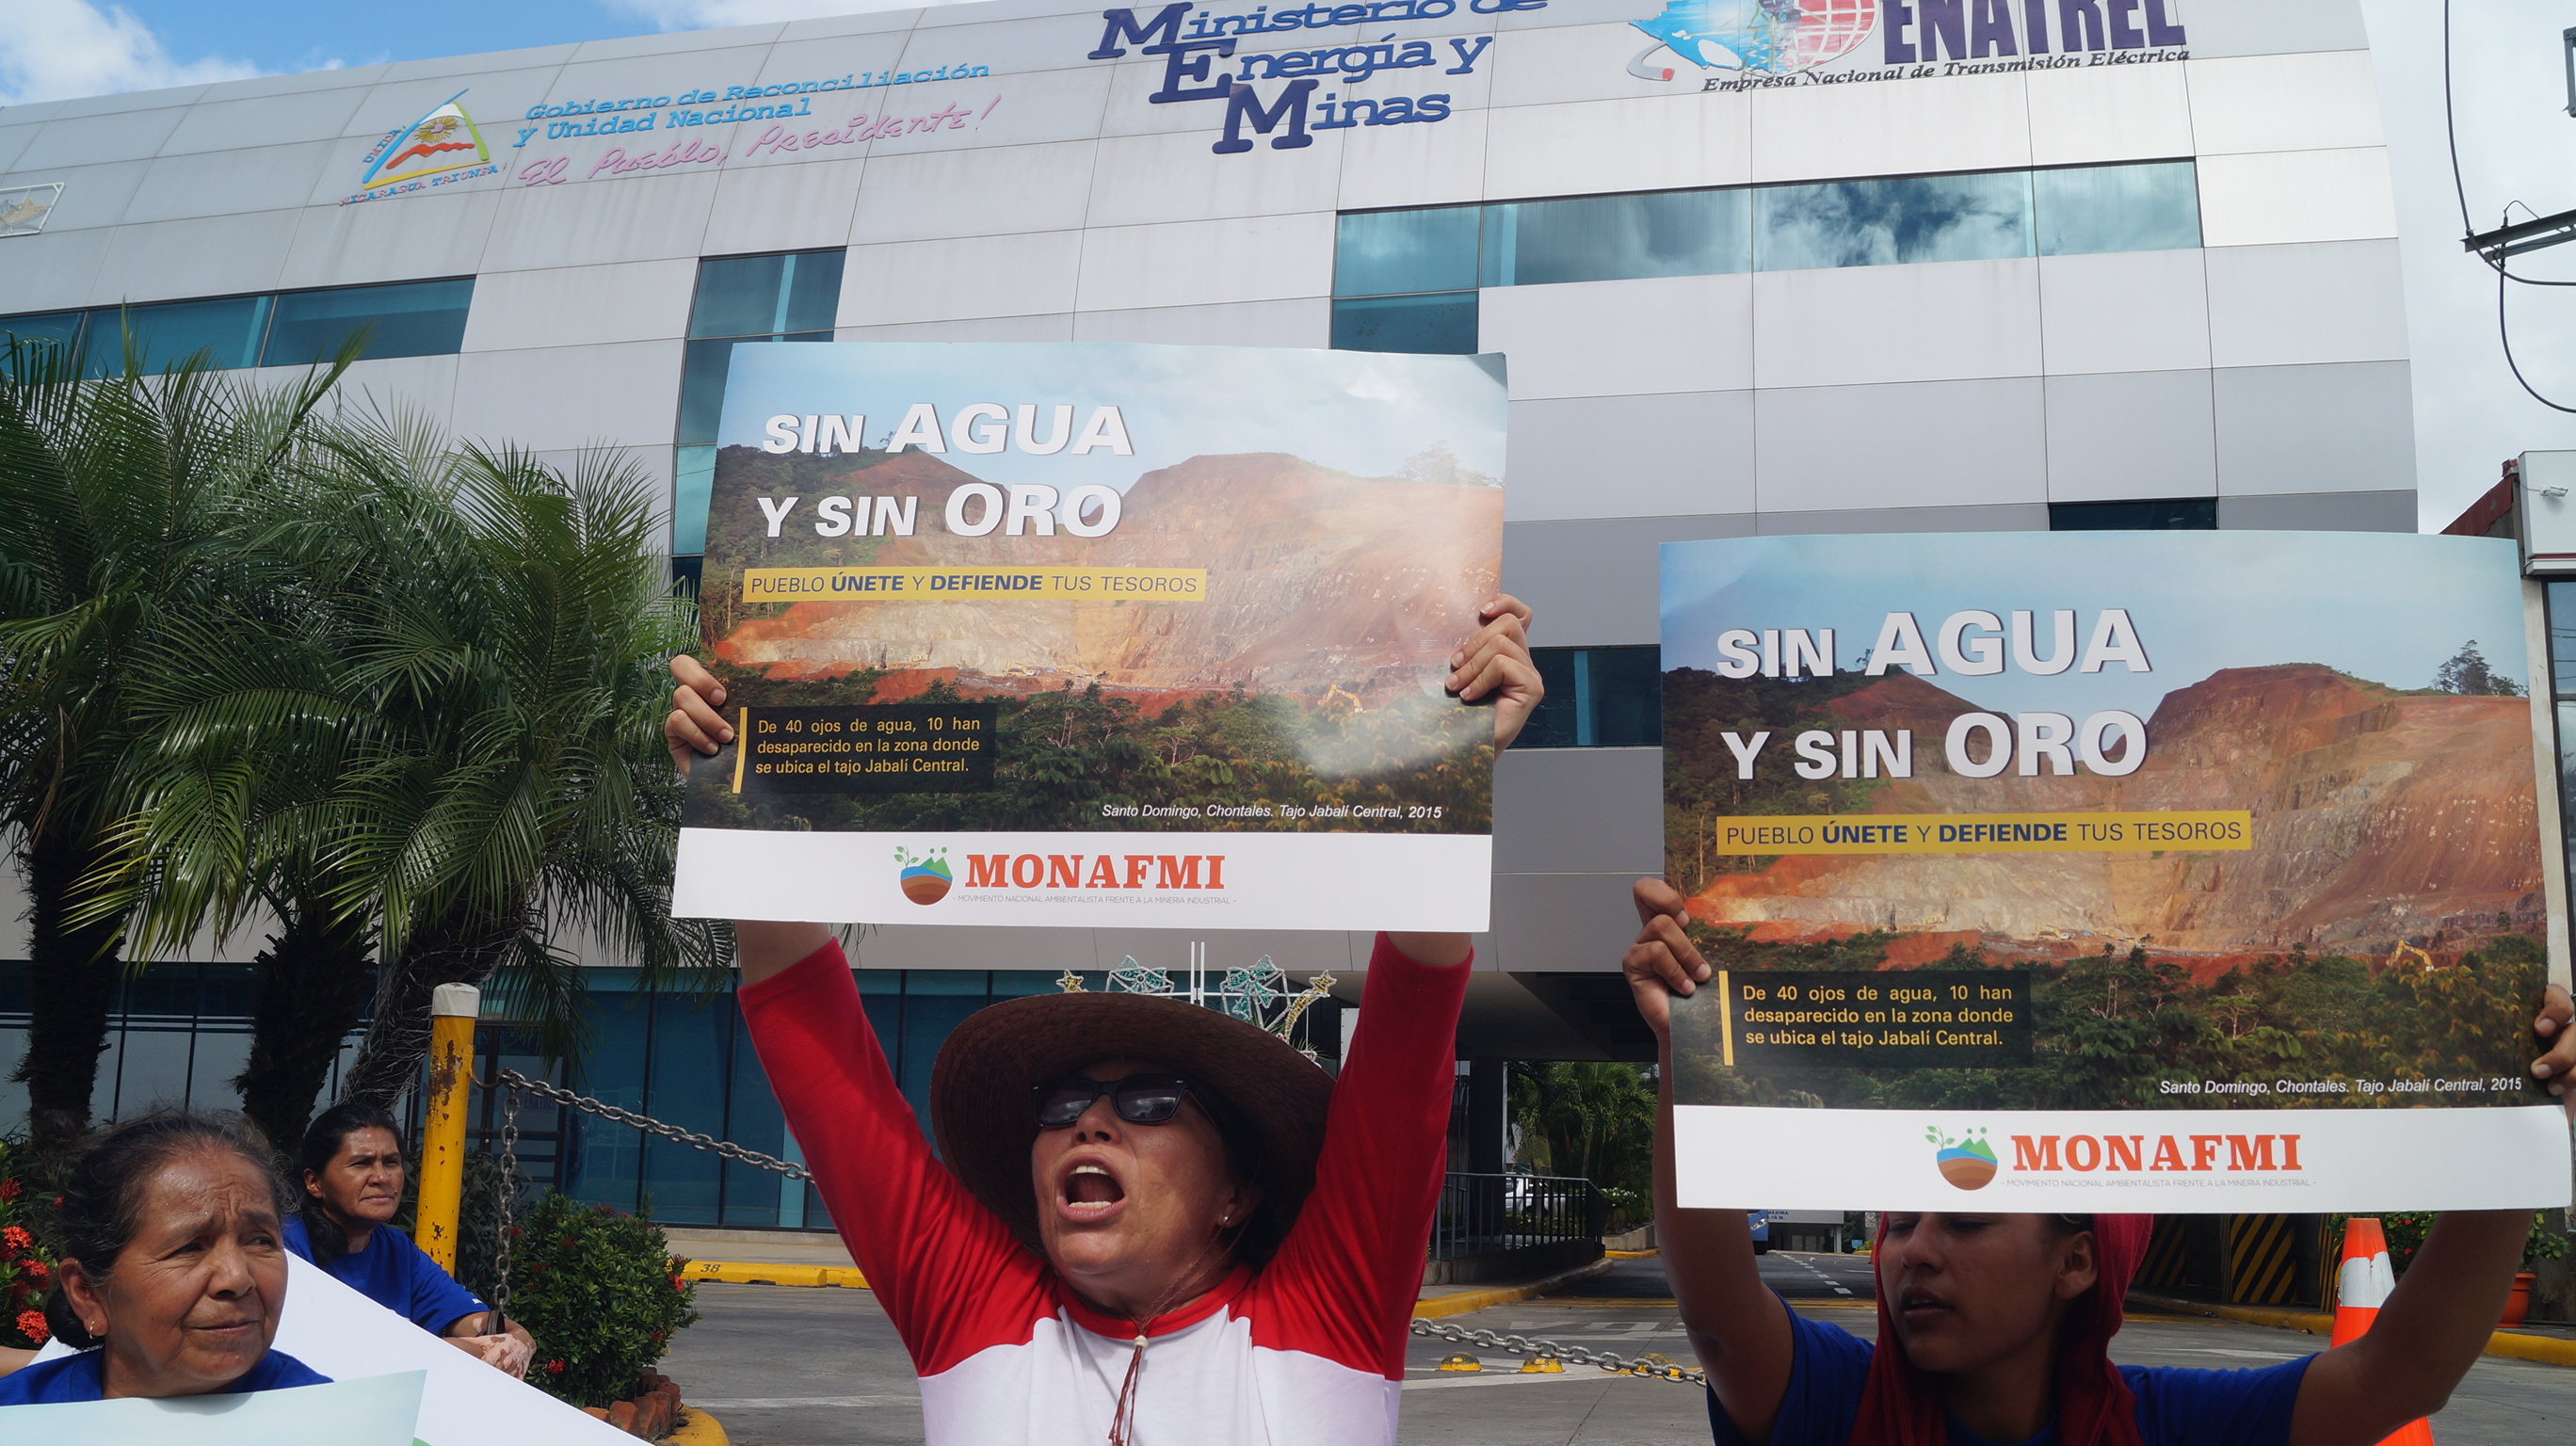 Ambientalistas exigen al Gobierno de Nicaragua erradicar la minería industrial